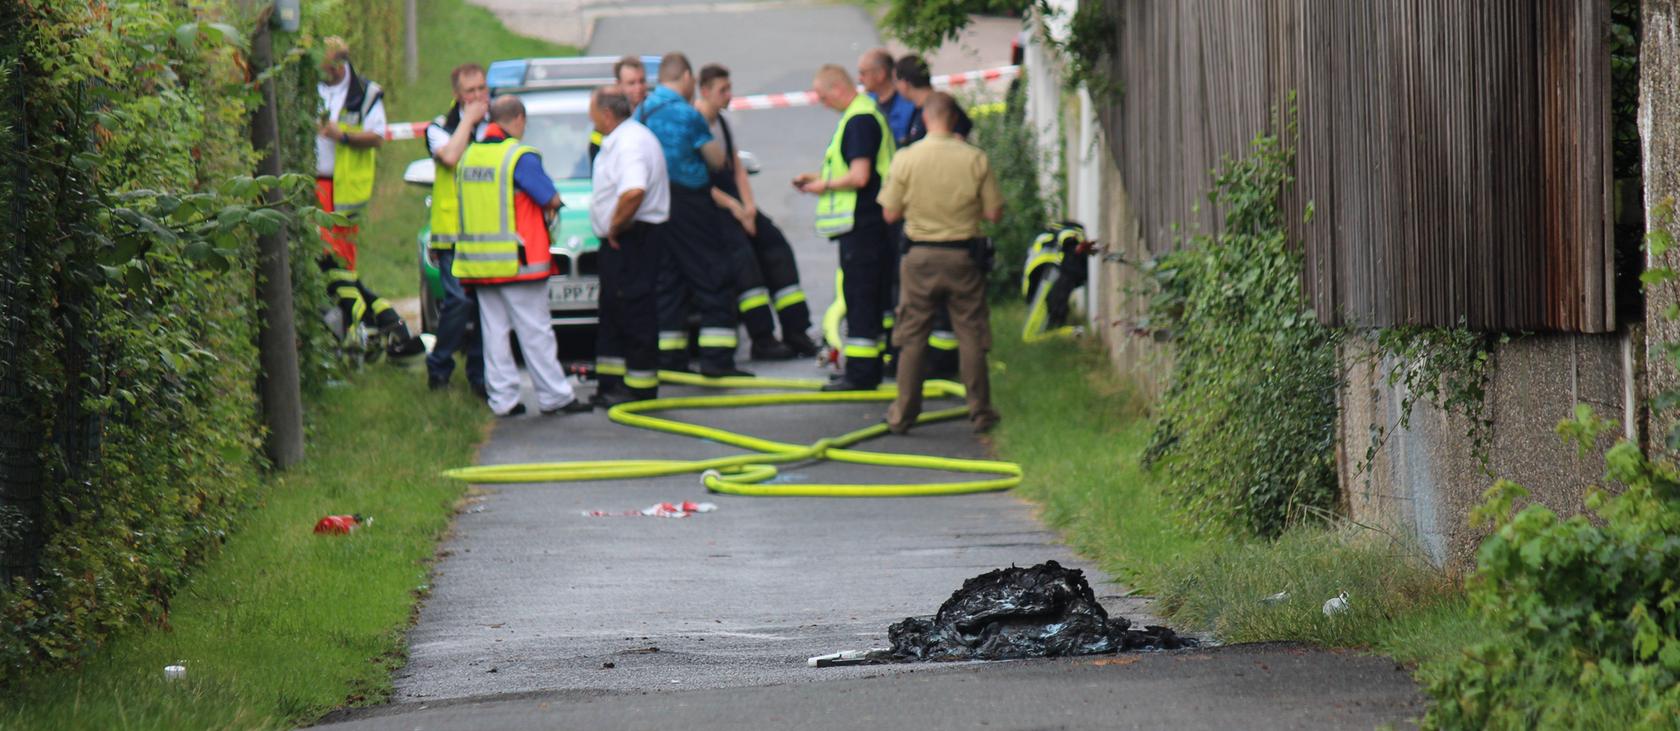 Der brennende Koffer in Zirndorf sorgte Ende Juli 2016 für Aufsehen. Die Täter sind weiterhin untergetaucht.